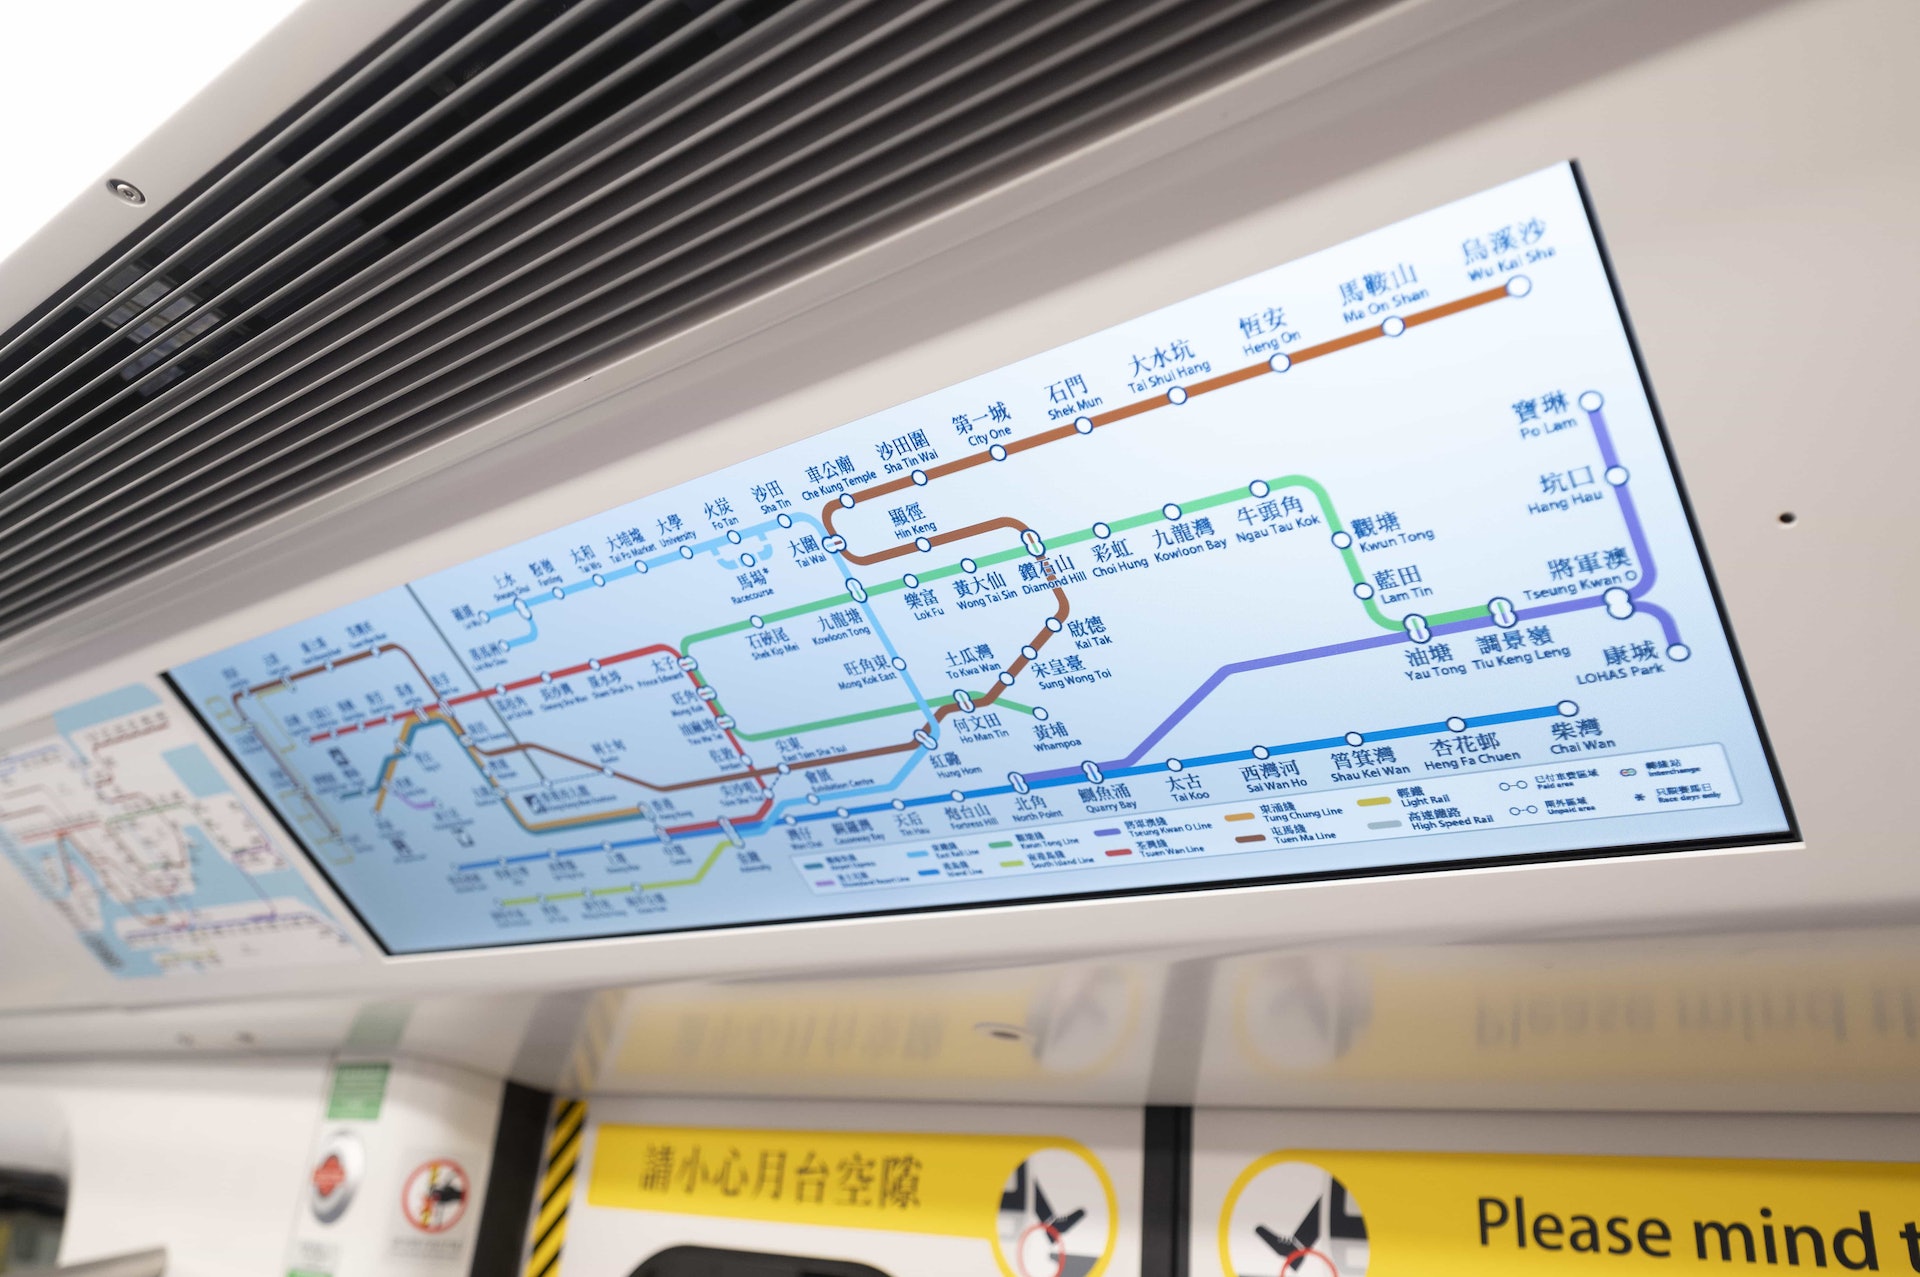 動態路綫圖提供包括：列車路綫、行駛方向、車門打開方向、所在車站、下一站等乘車資訊。